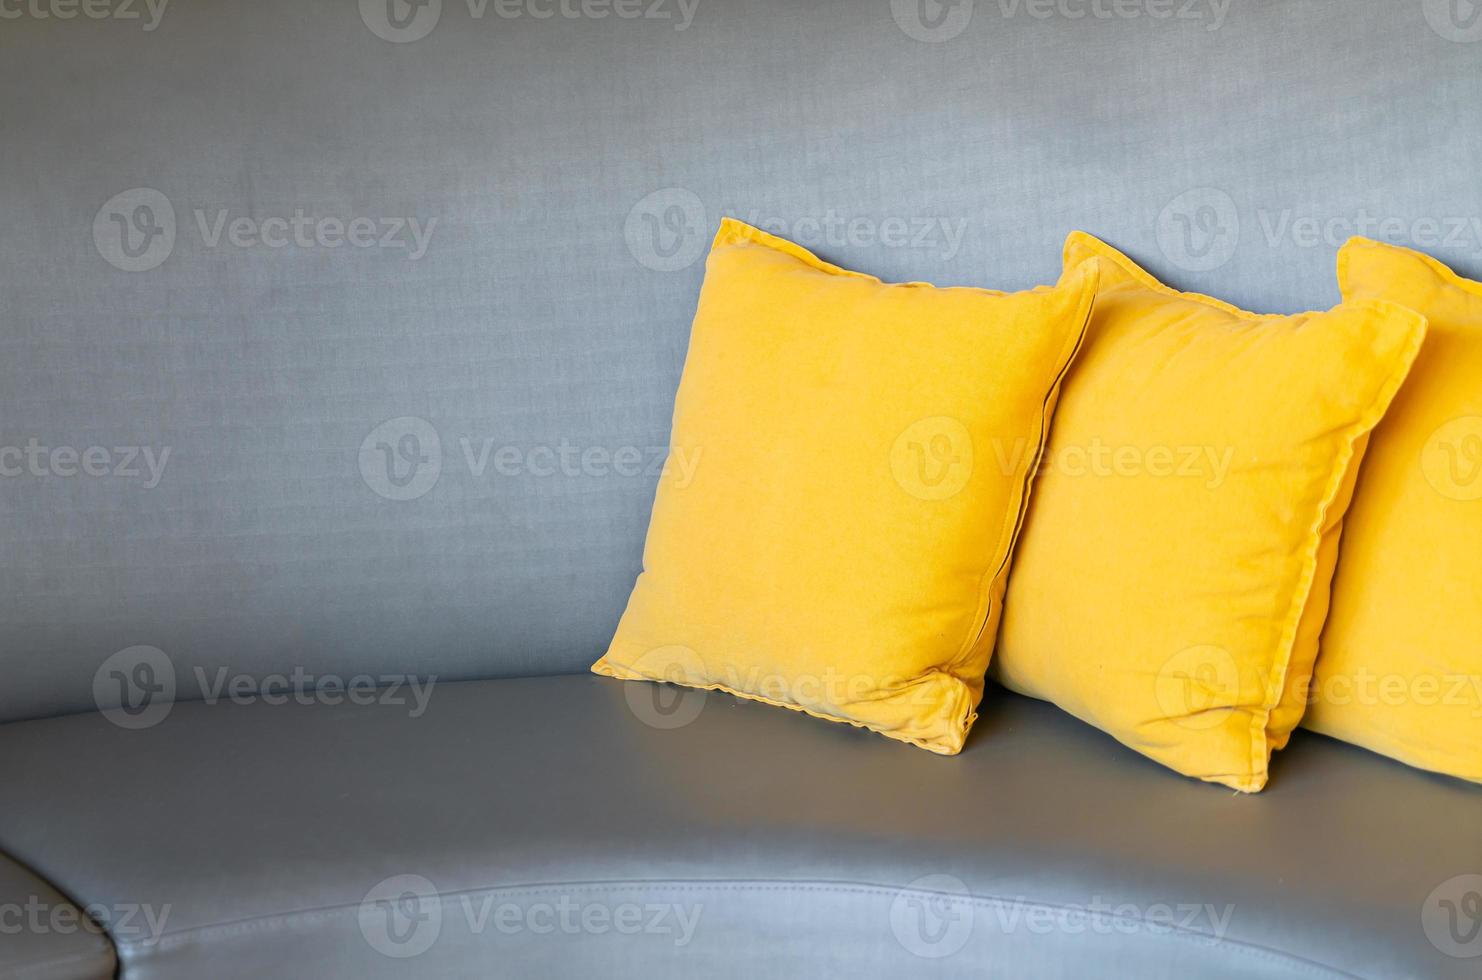 décoration d'oreillers confortables sur canapé photo